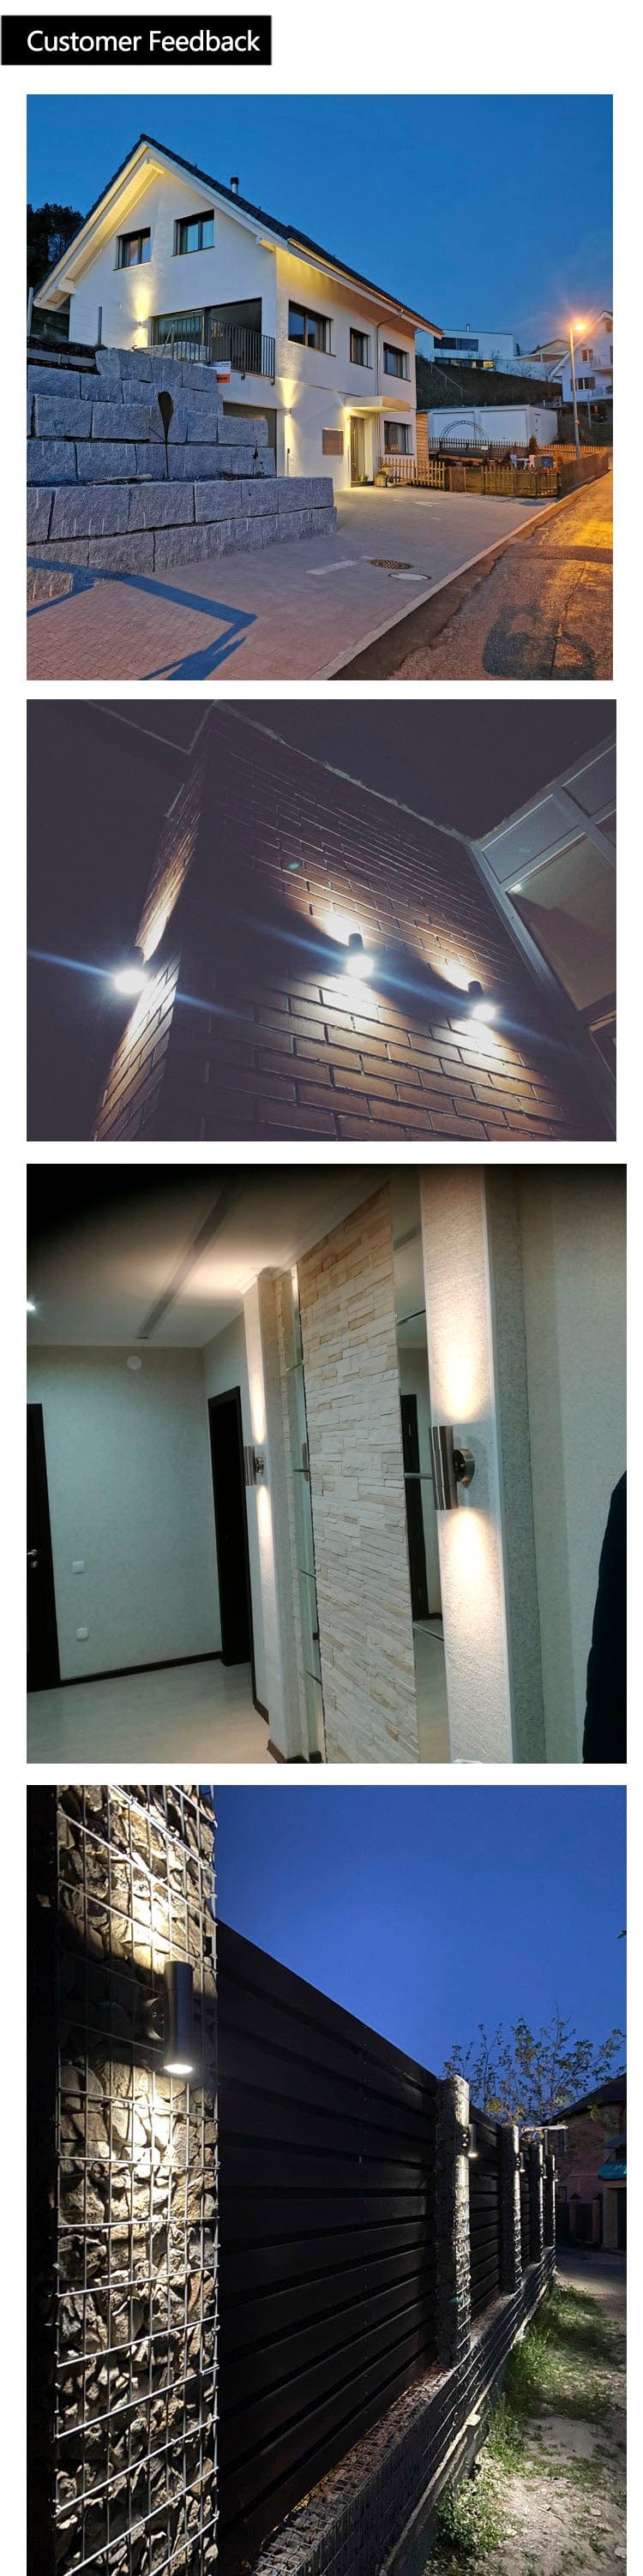 Spotlight Wall Light